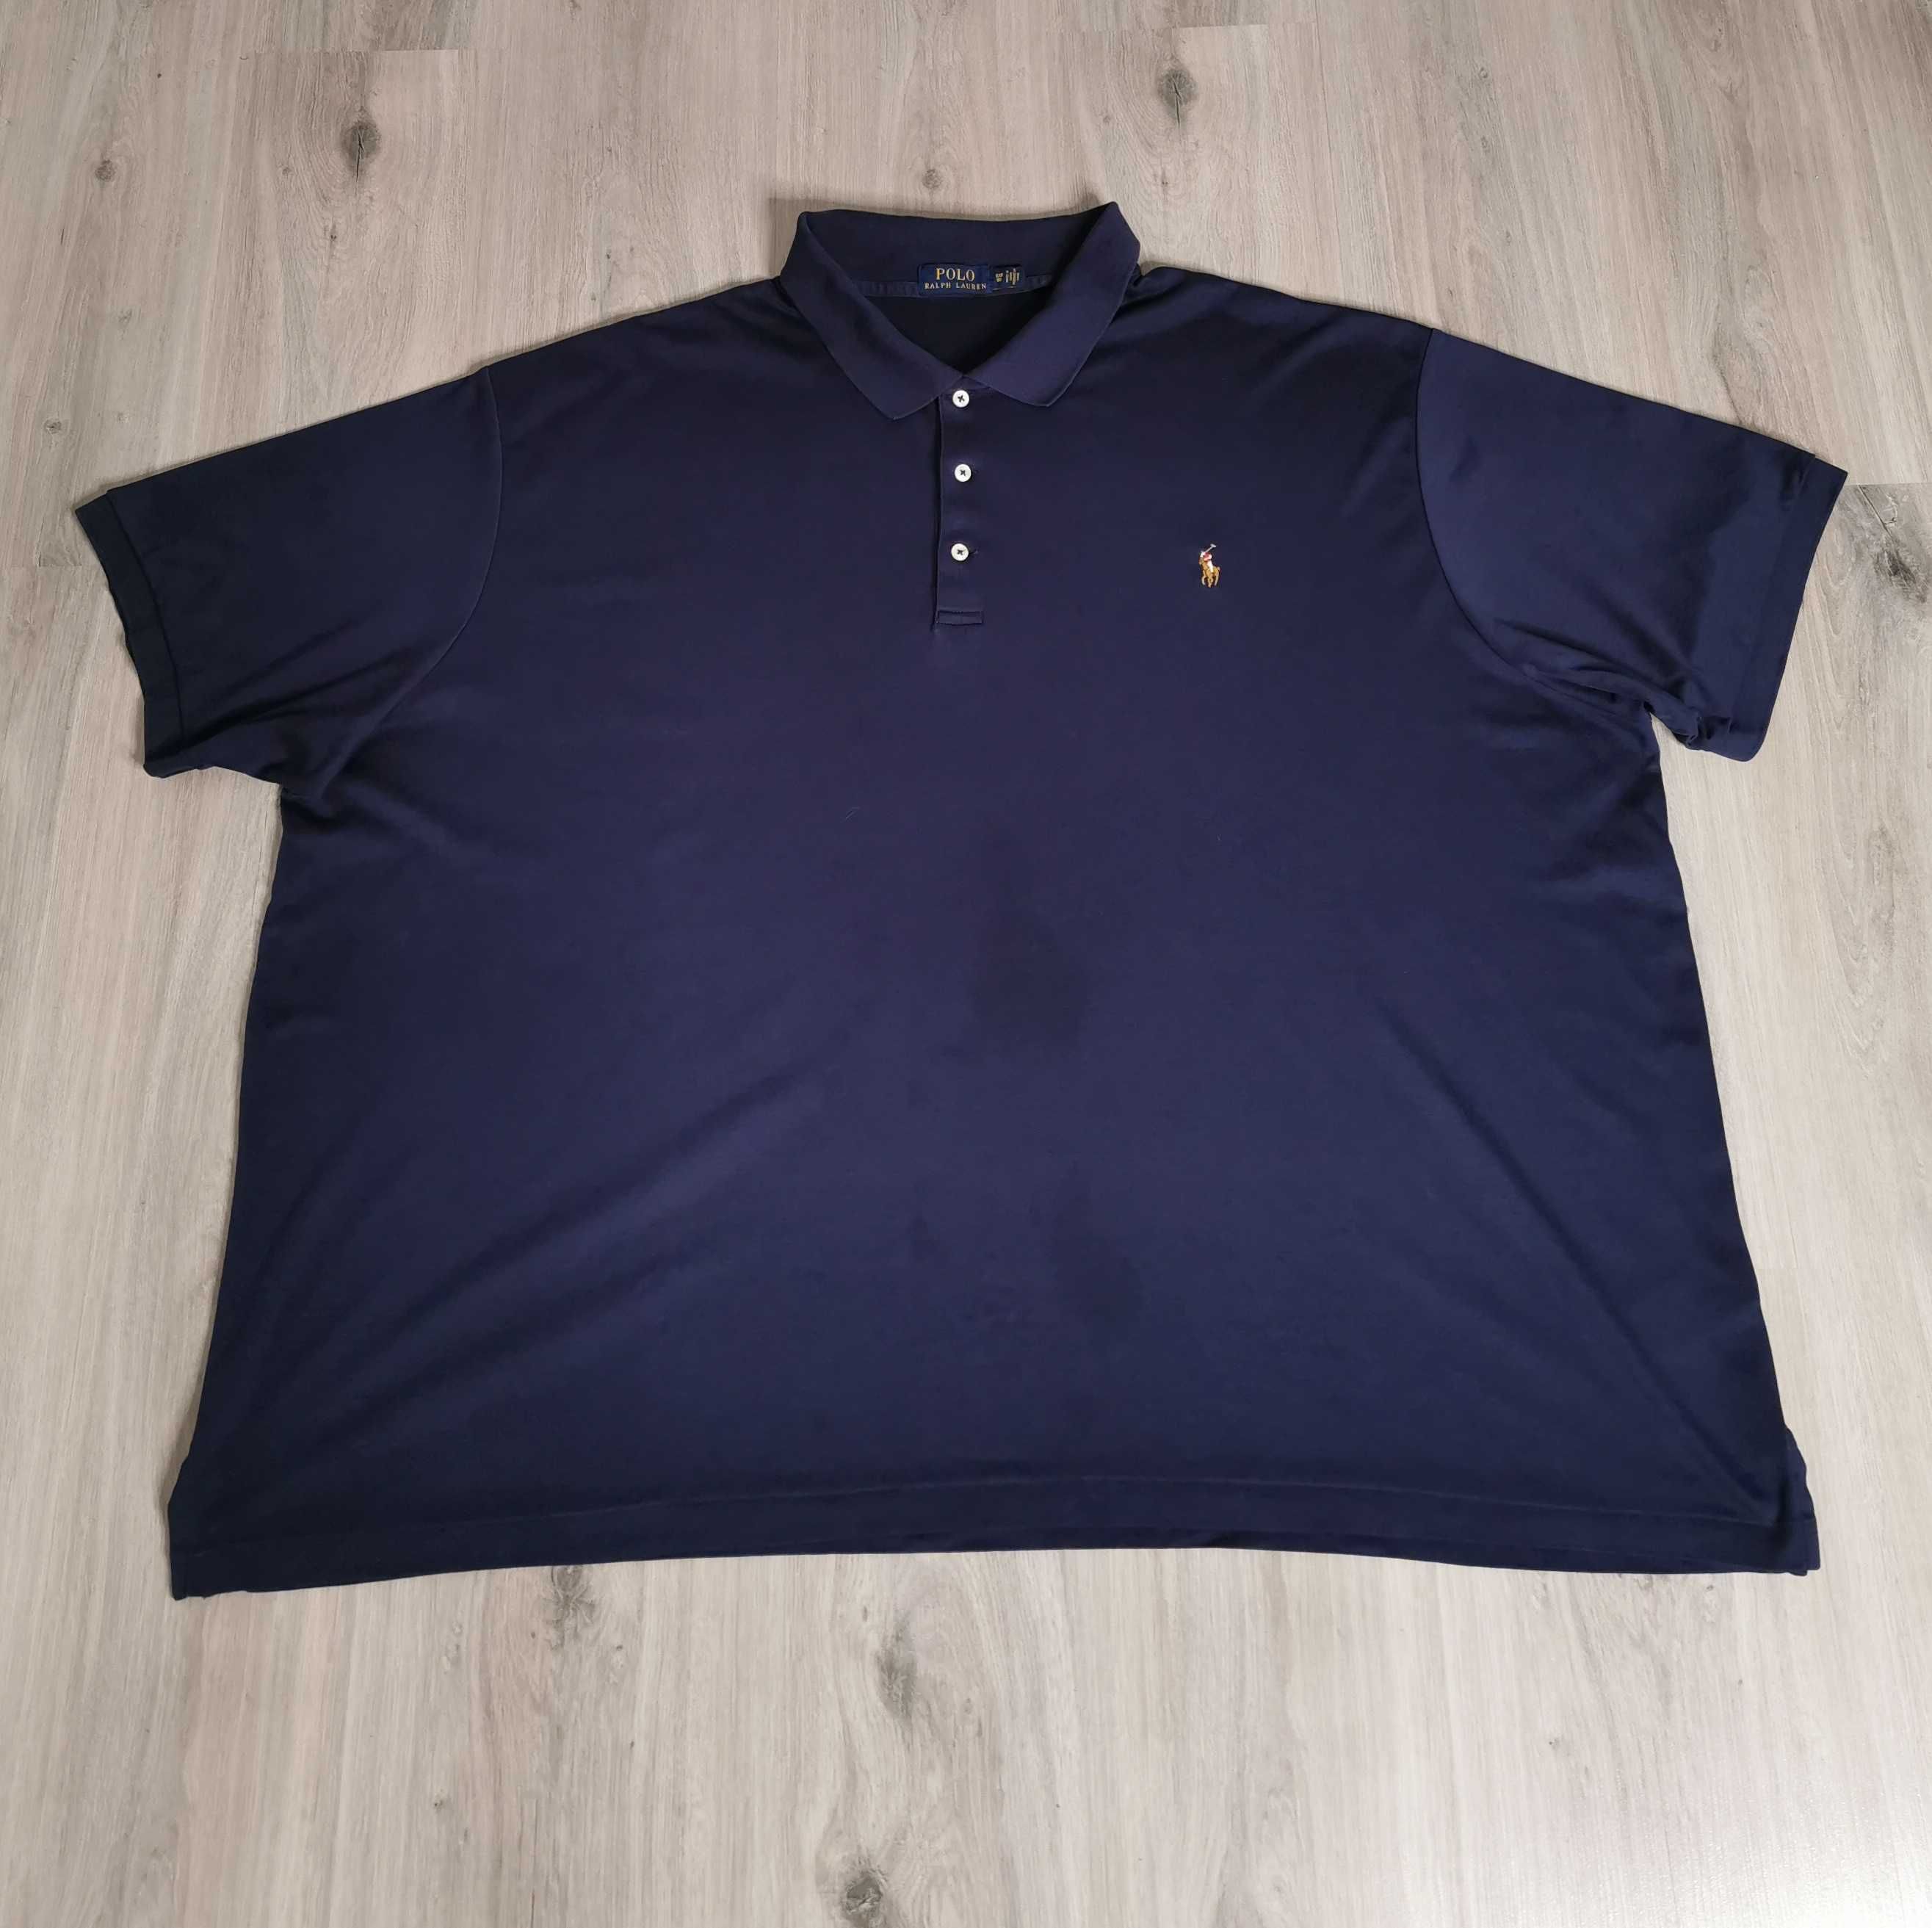 T-shirt polo Ralph Lauren rozmiar plus size 5XL/6XL wyszywane logo